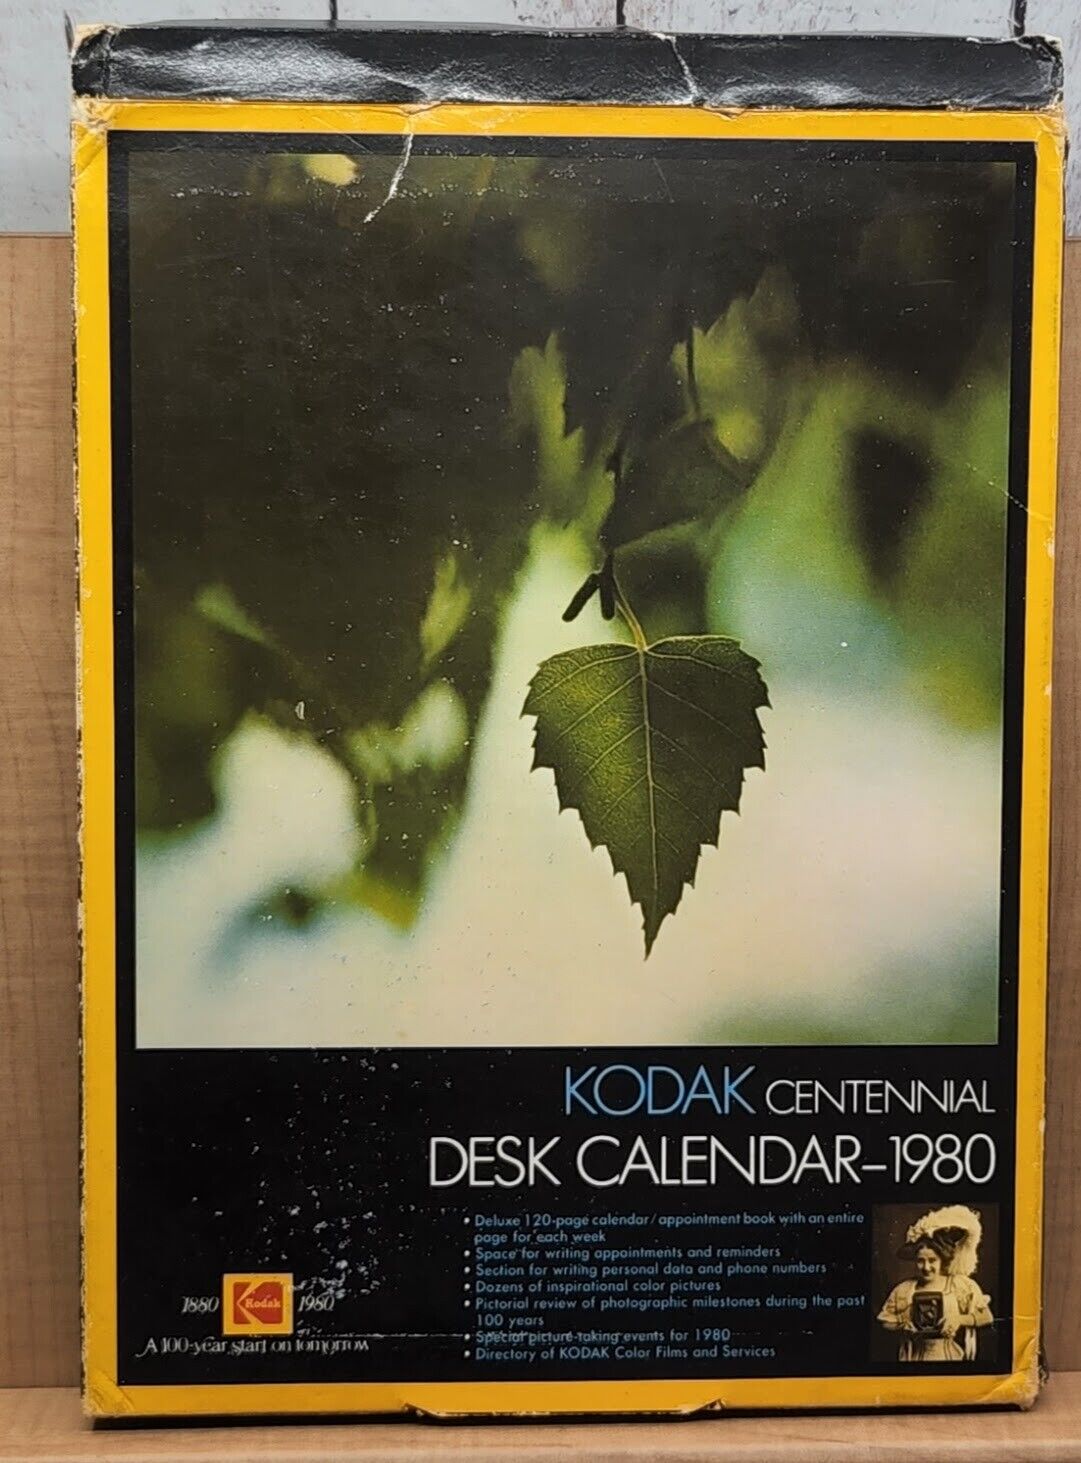 1880-1980 Kodak Centennial Desk Calendar 1980